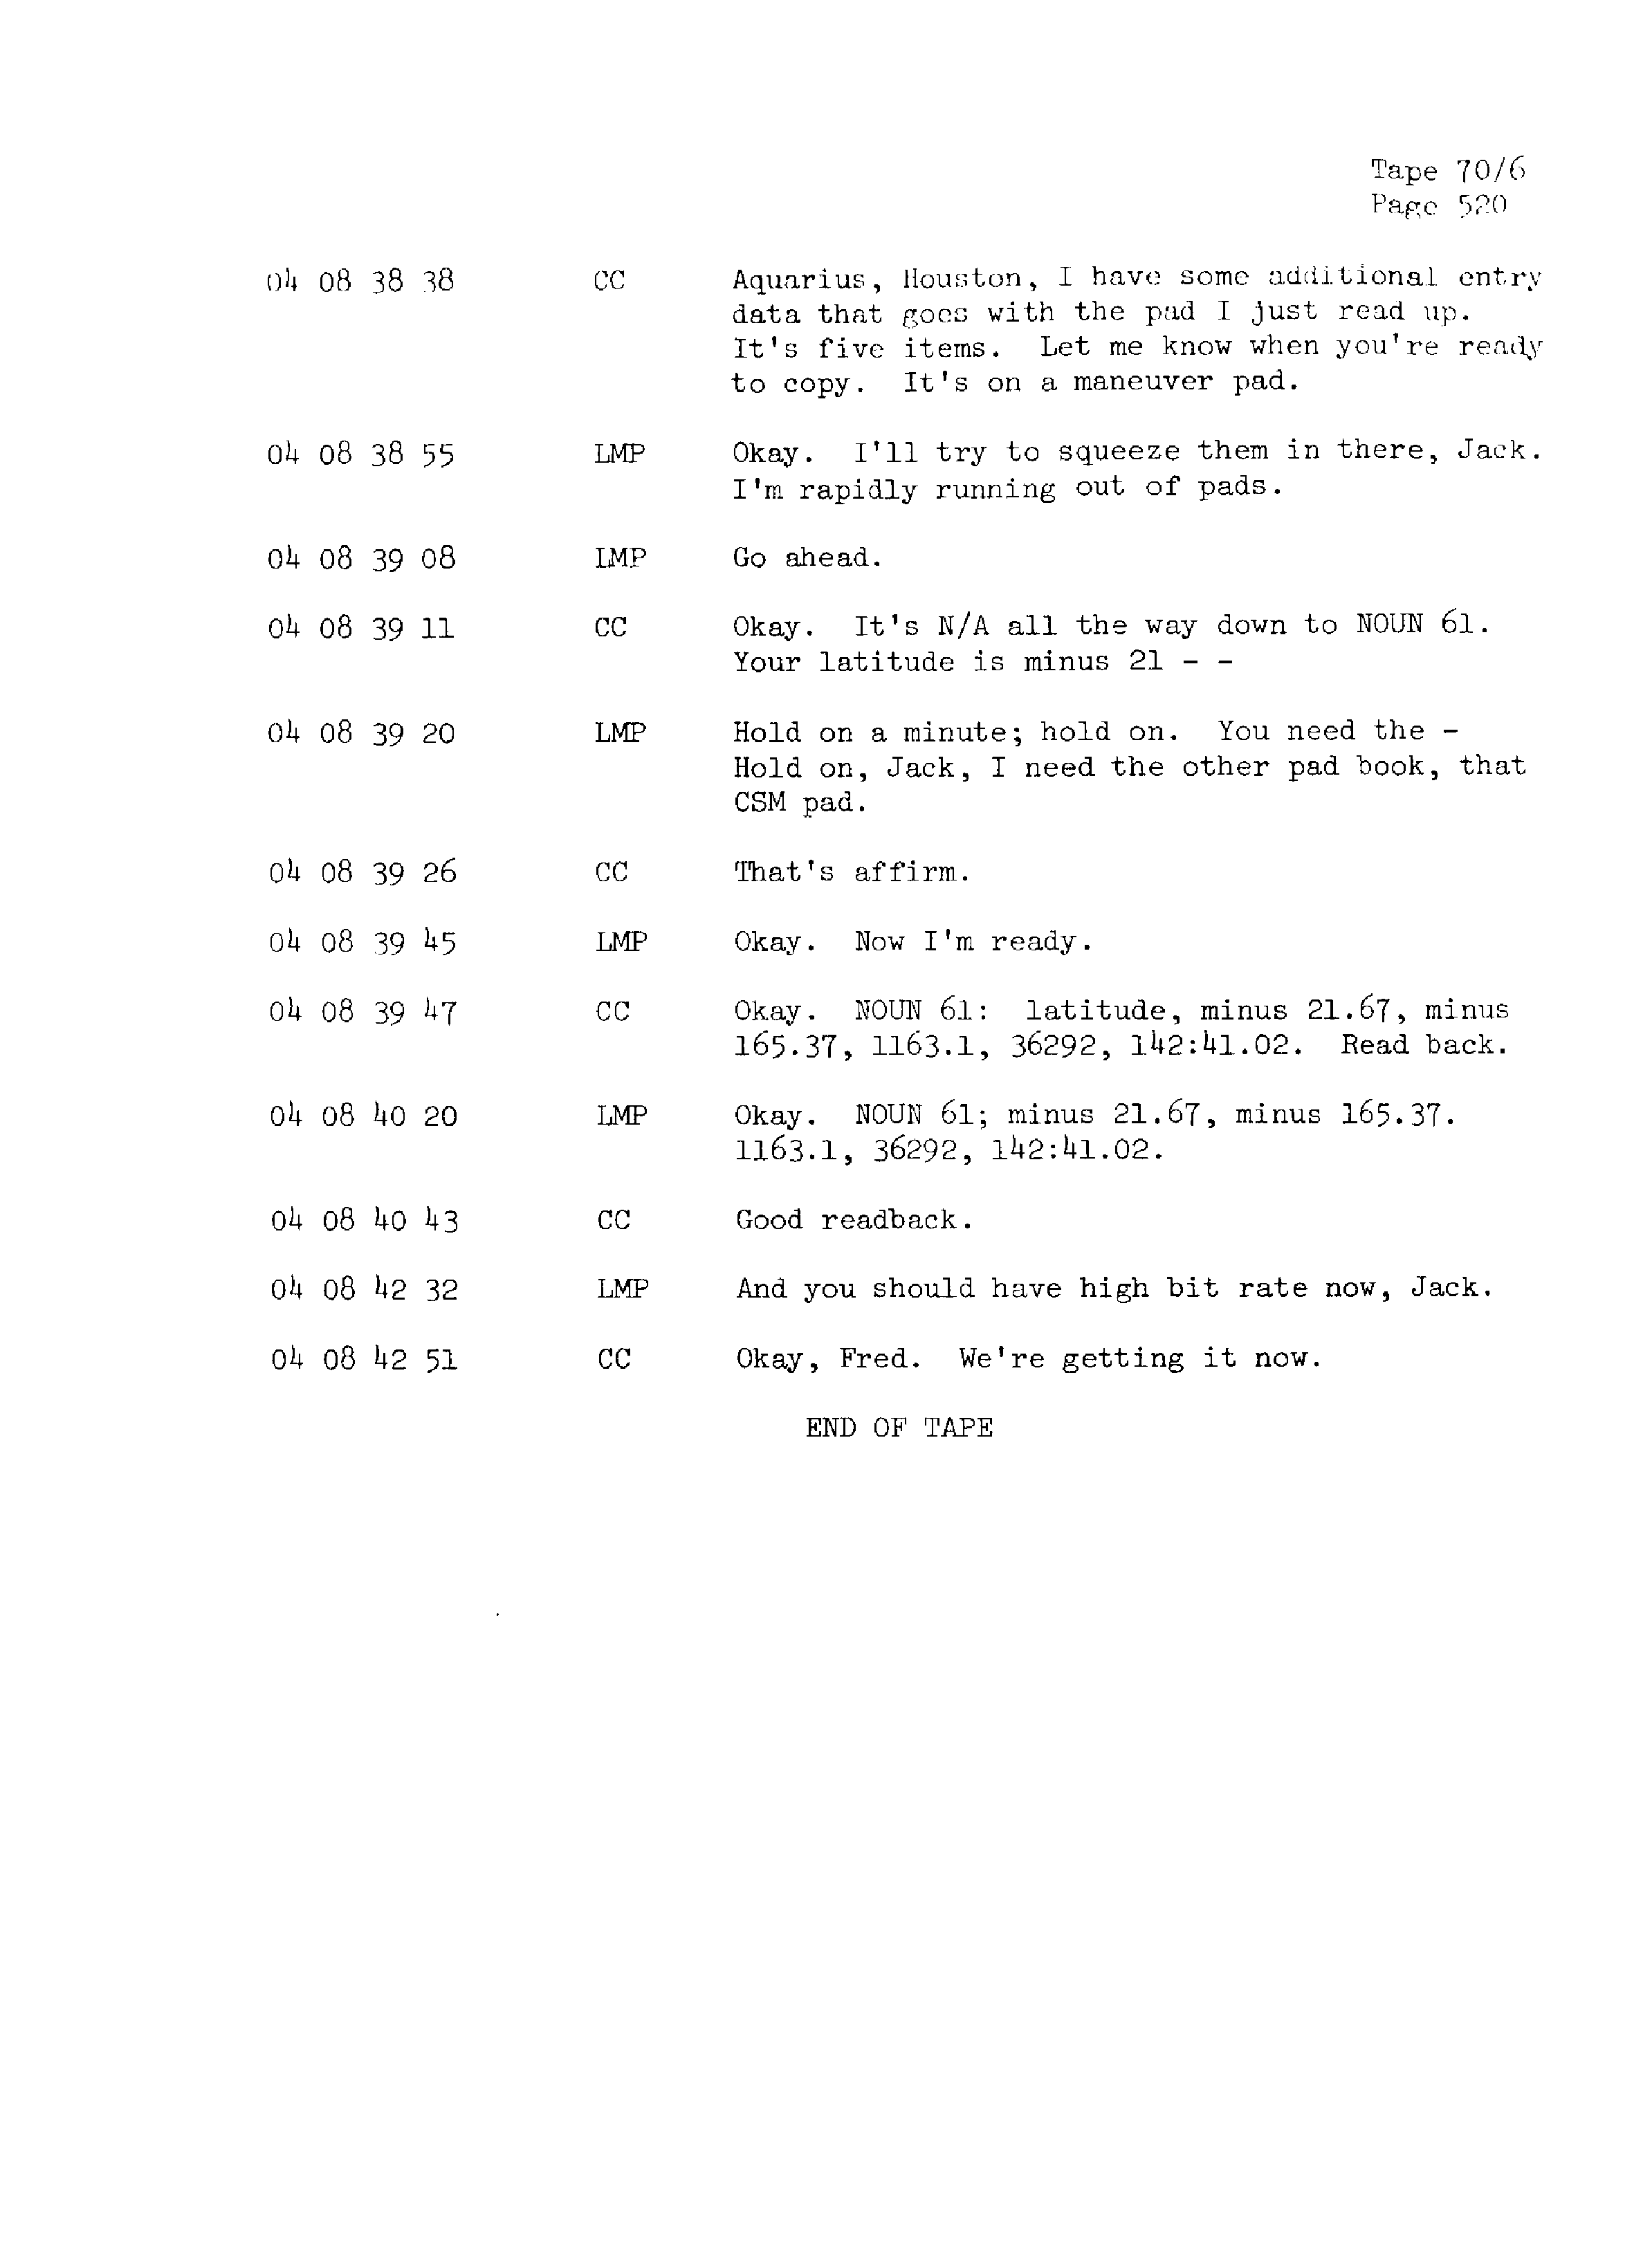 Page 527 of Apollo 13’s original transcript